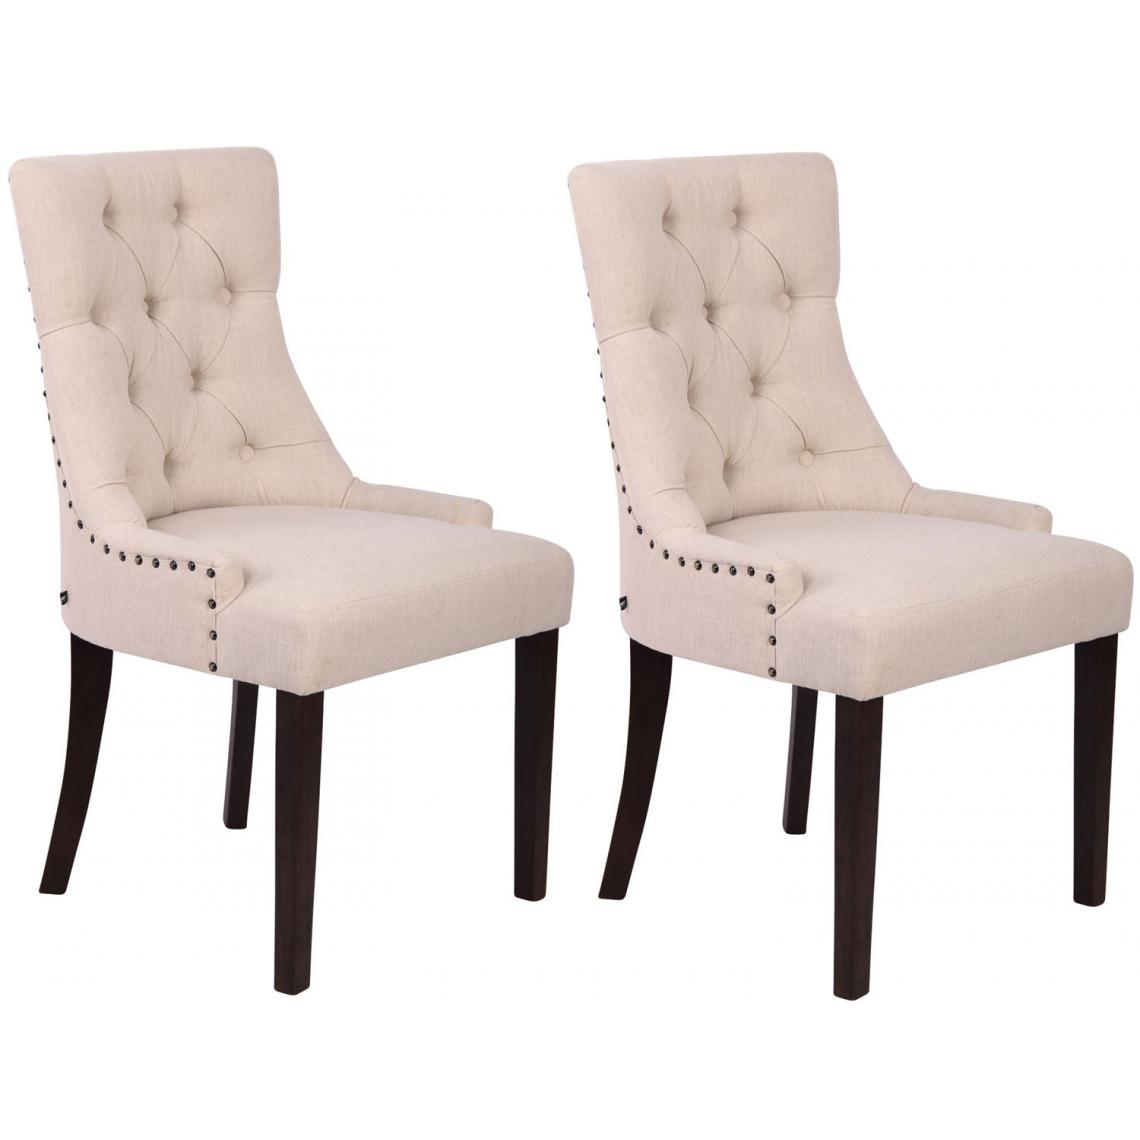 Icaverne - Esthetique Lot de 2 chaises de salle à manger tissu reference Athènes antique couleur crème - Chaises